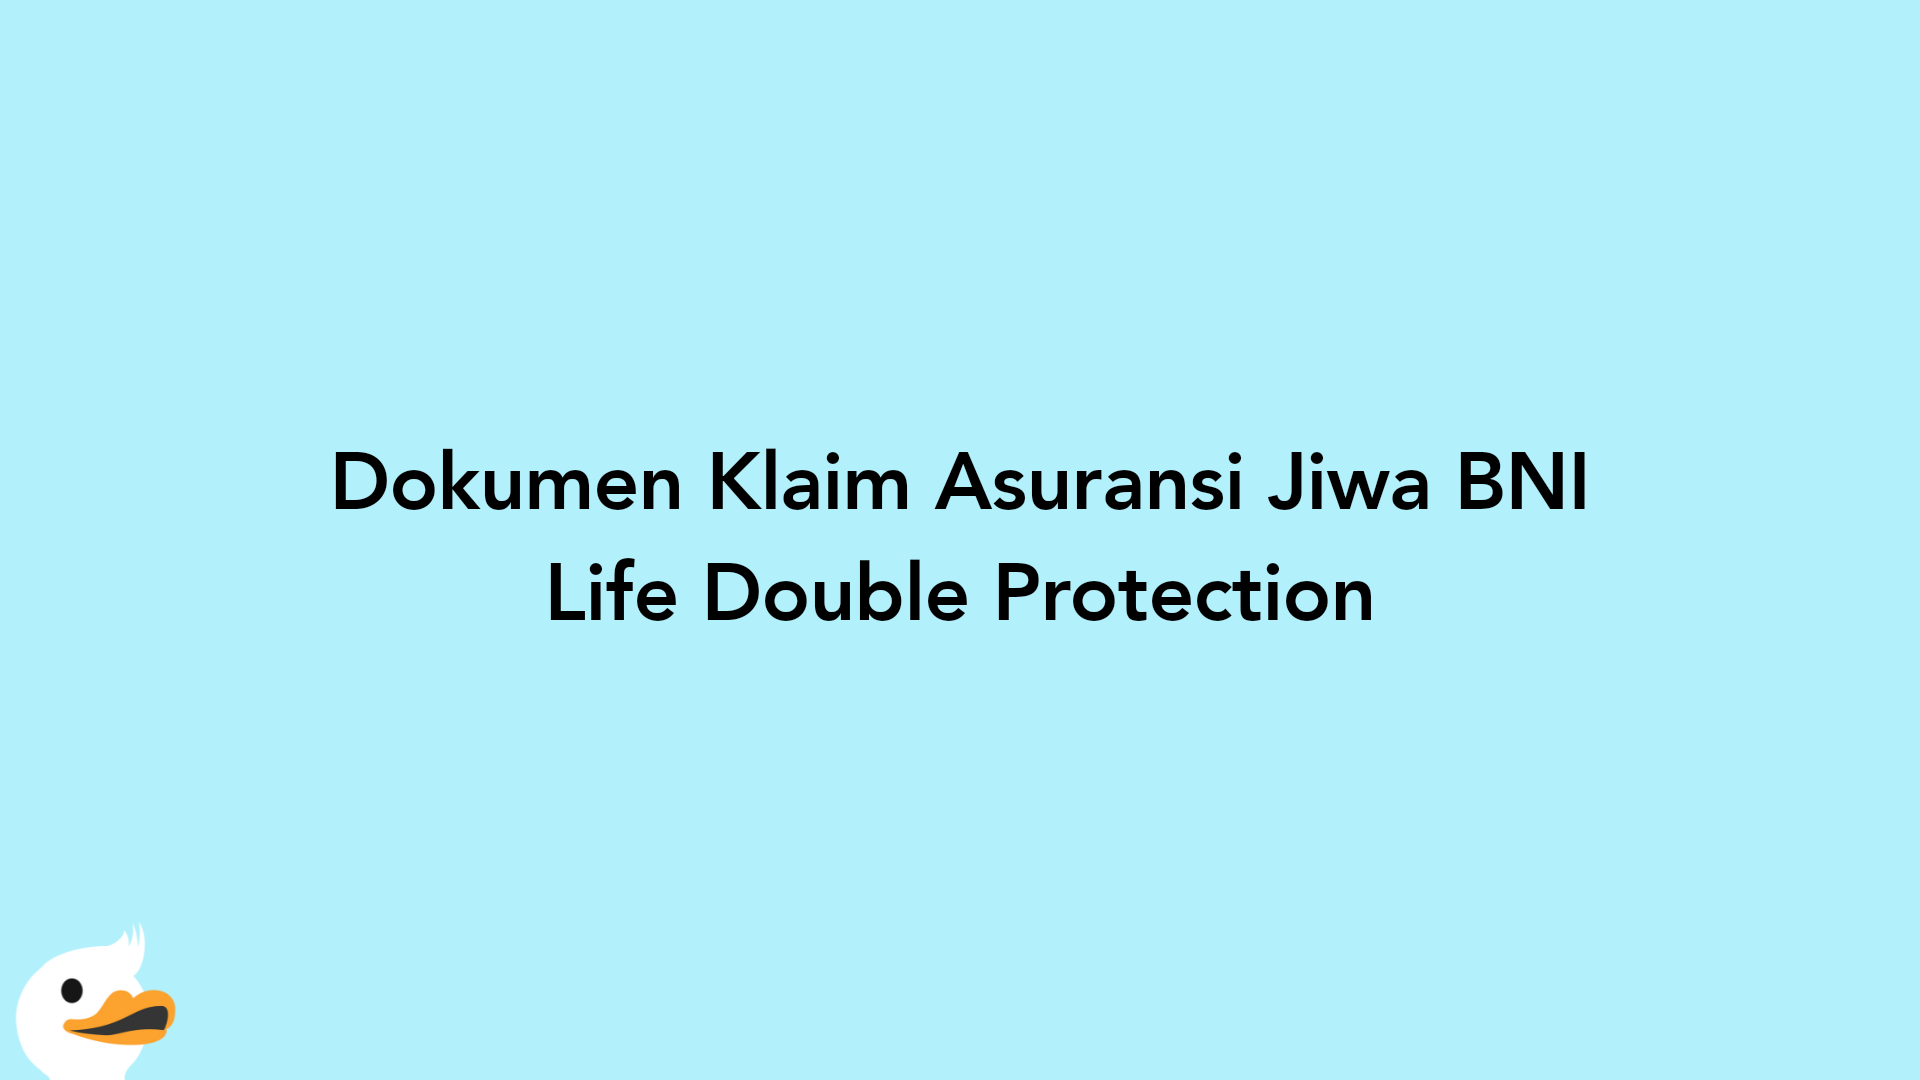 Dokumen Klaim Asuransi Jiwa BNI Life Double Protection